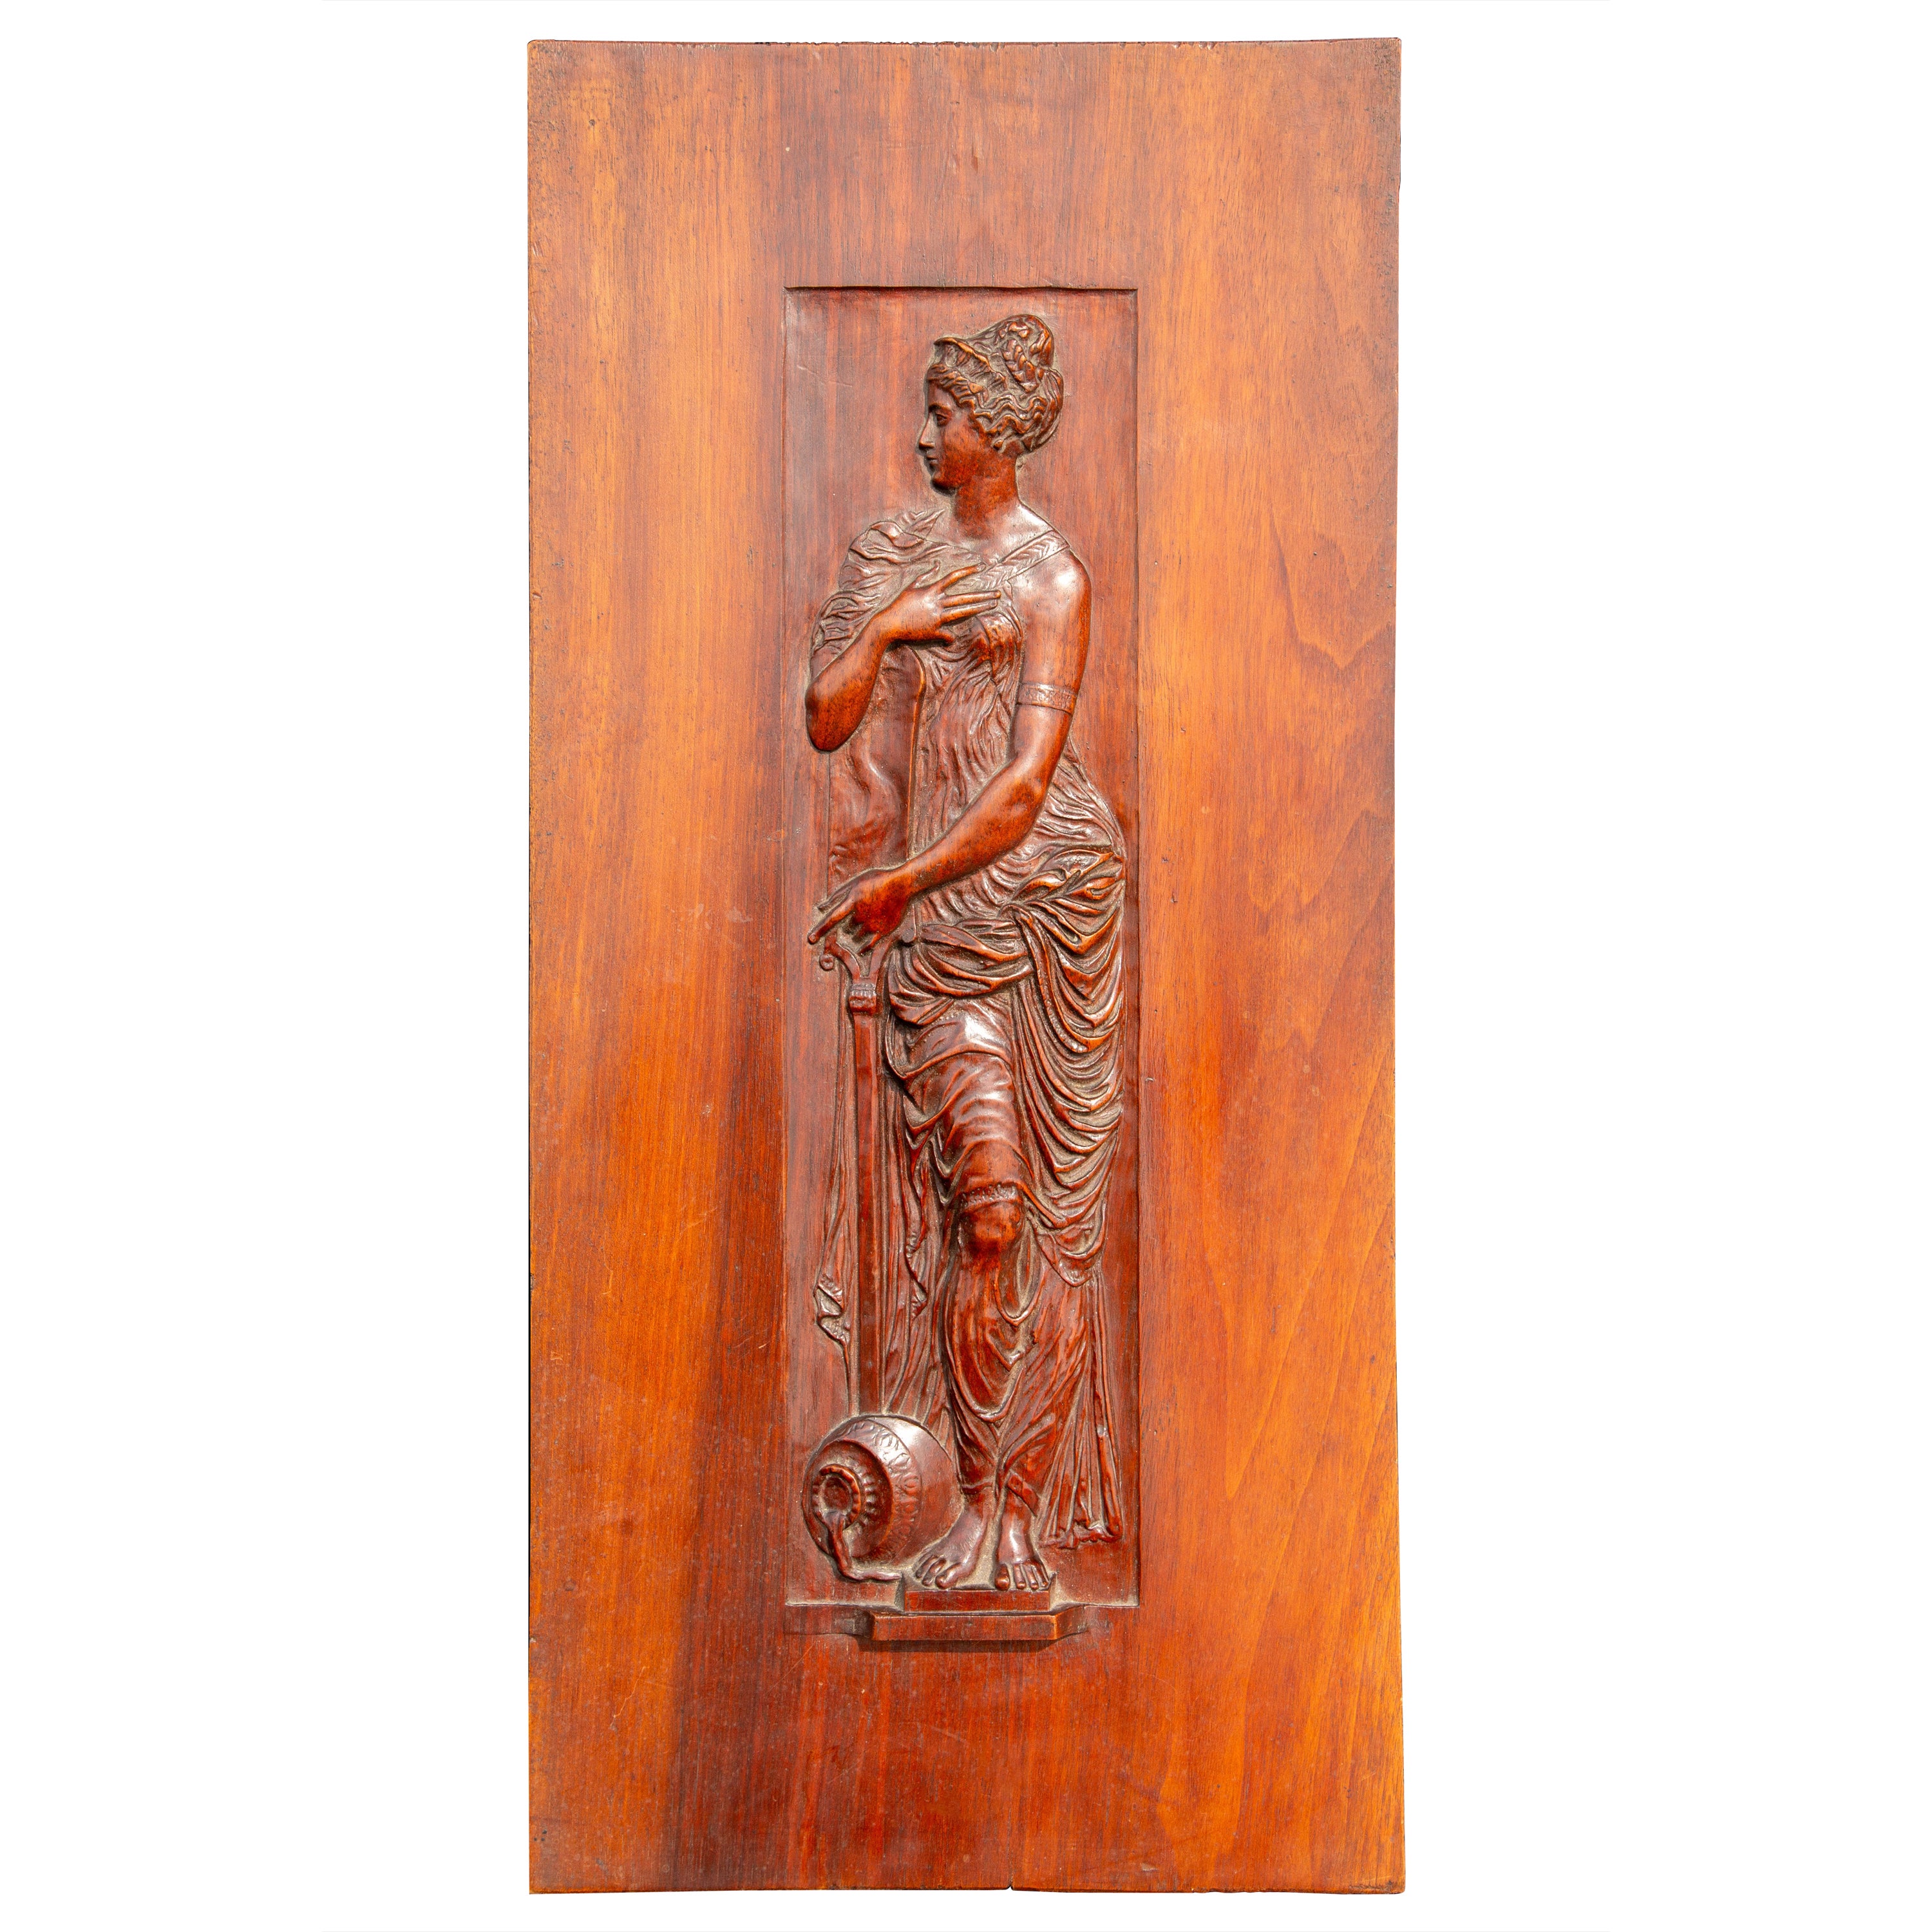 Panneau en bois sculpté du 20e siècle représentant une femme classique